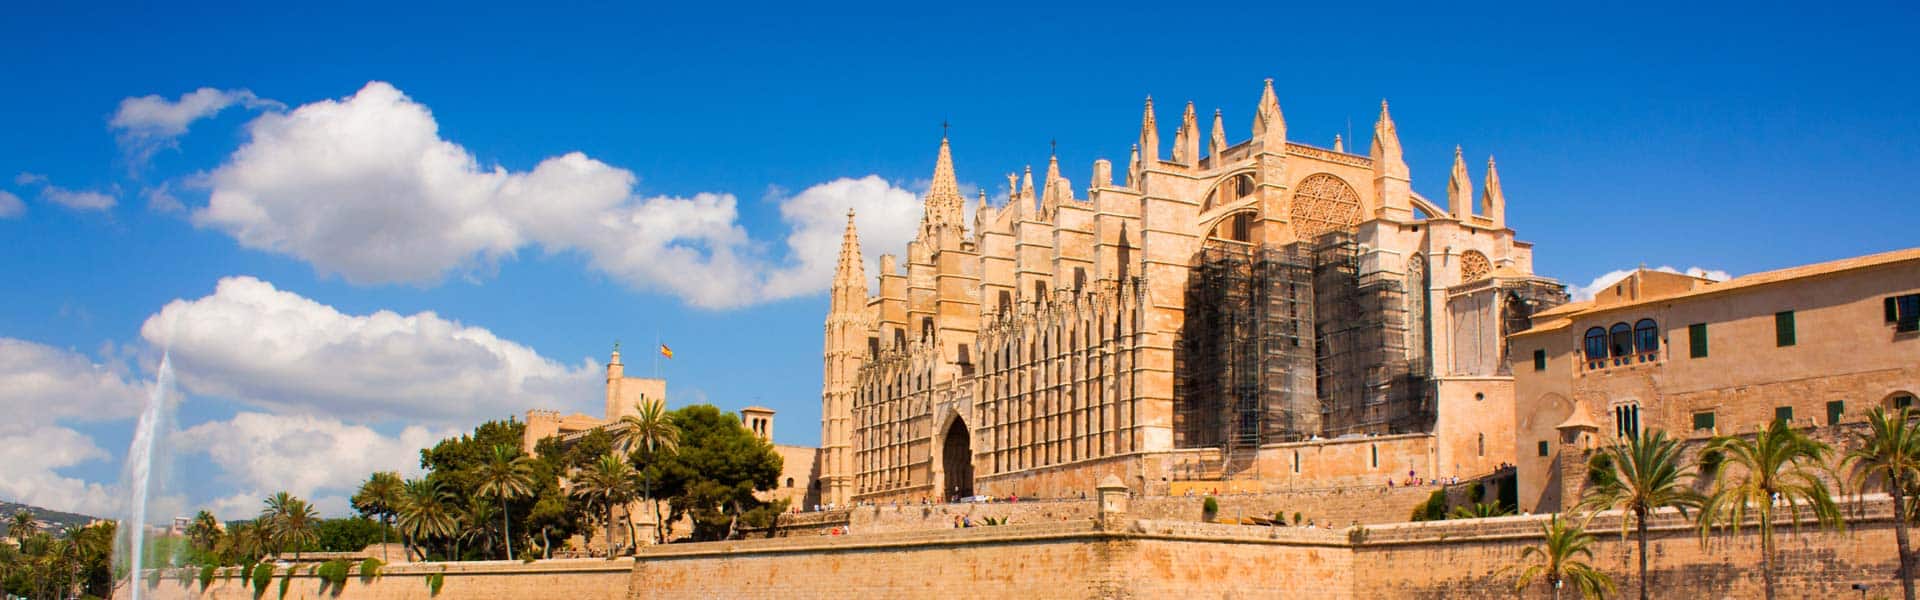 Altehrwürdig und beeindruckend schön: die Kathedrale La Seu in Palma de Mallorca